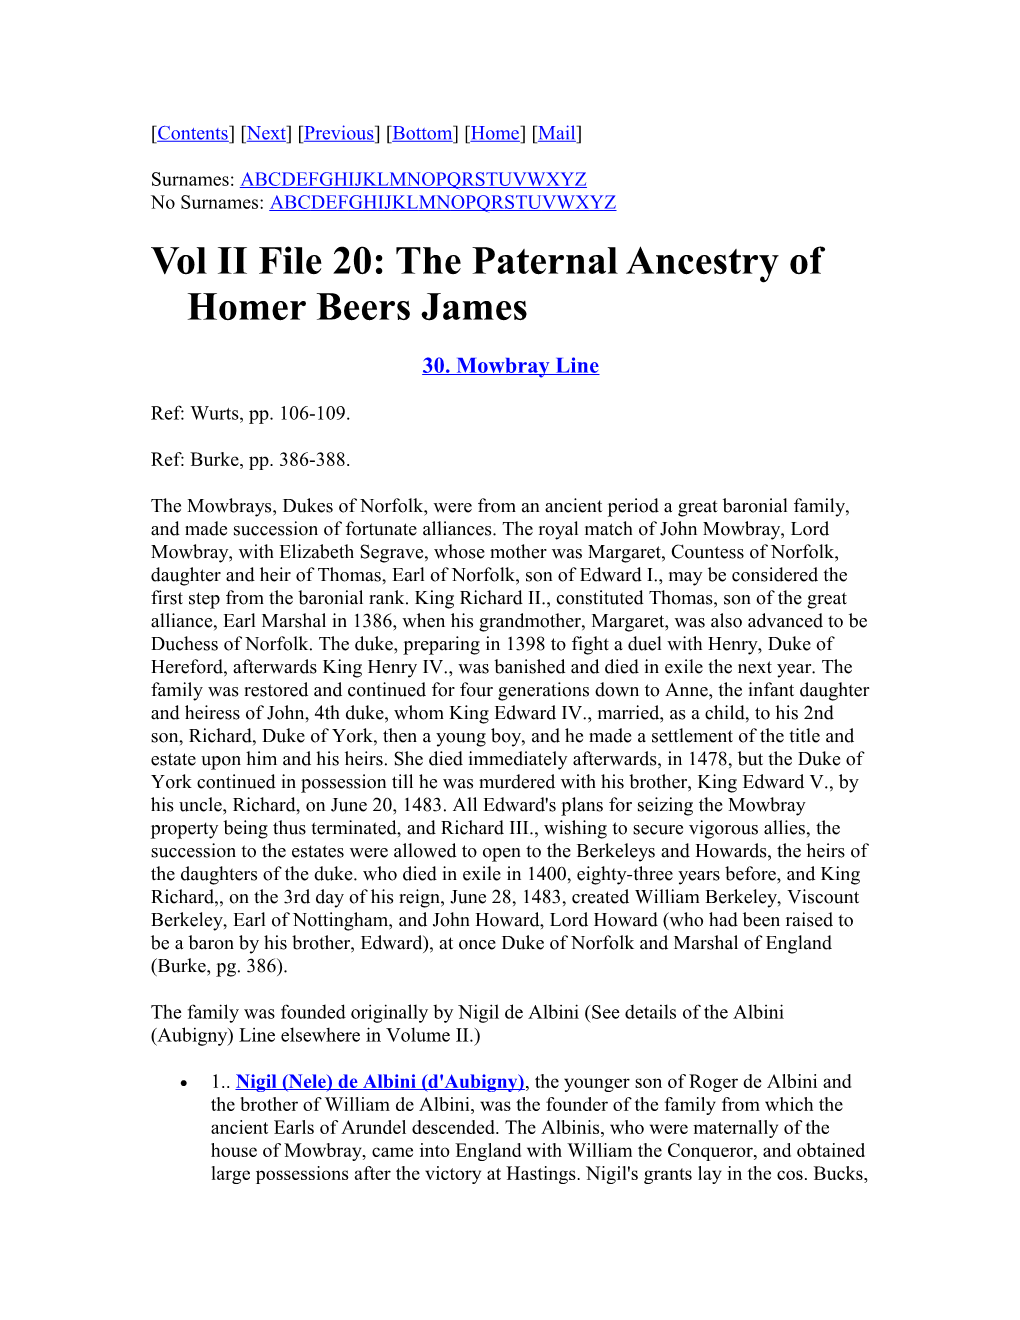 Vol II File 20: the Paternal Ancestry of Homer Beers James